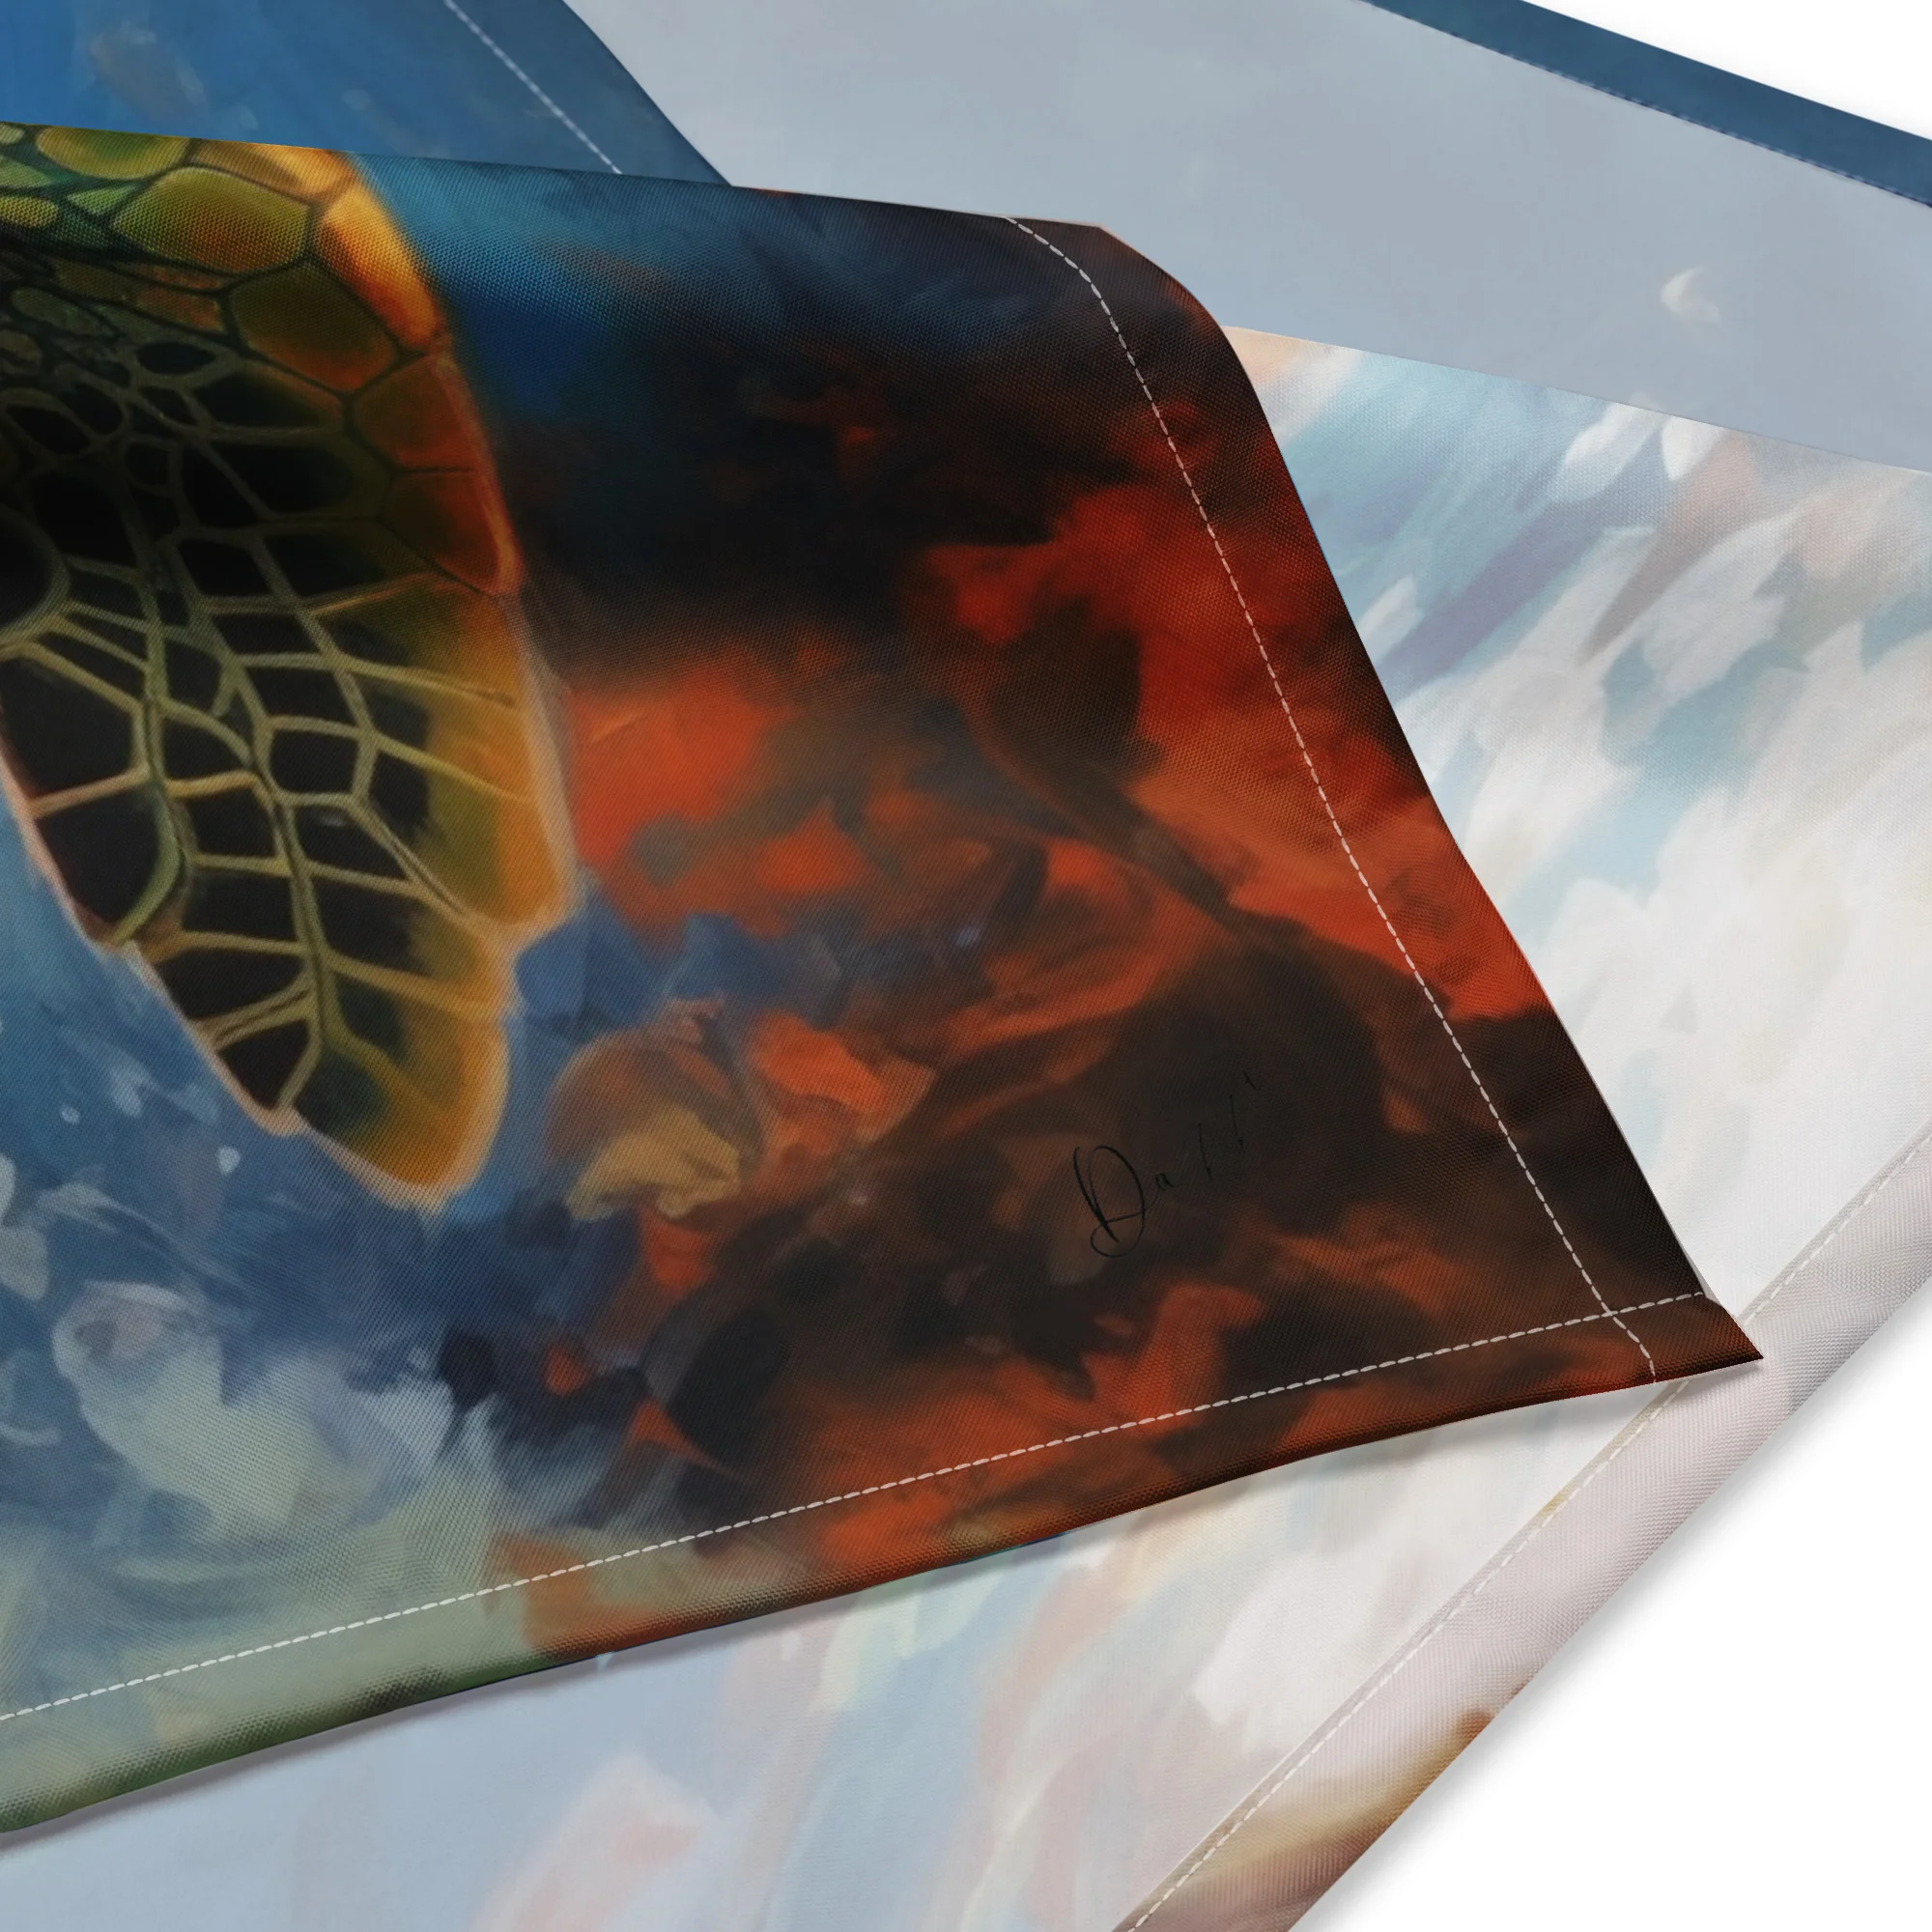 Sea Turtle Oil Painting Print Sqaure Scarf